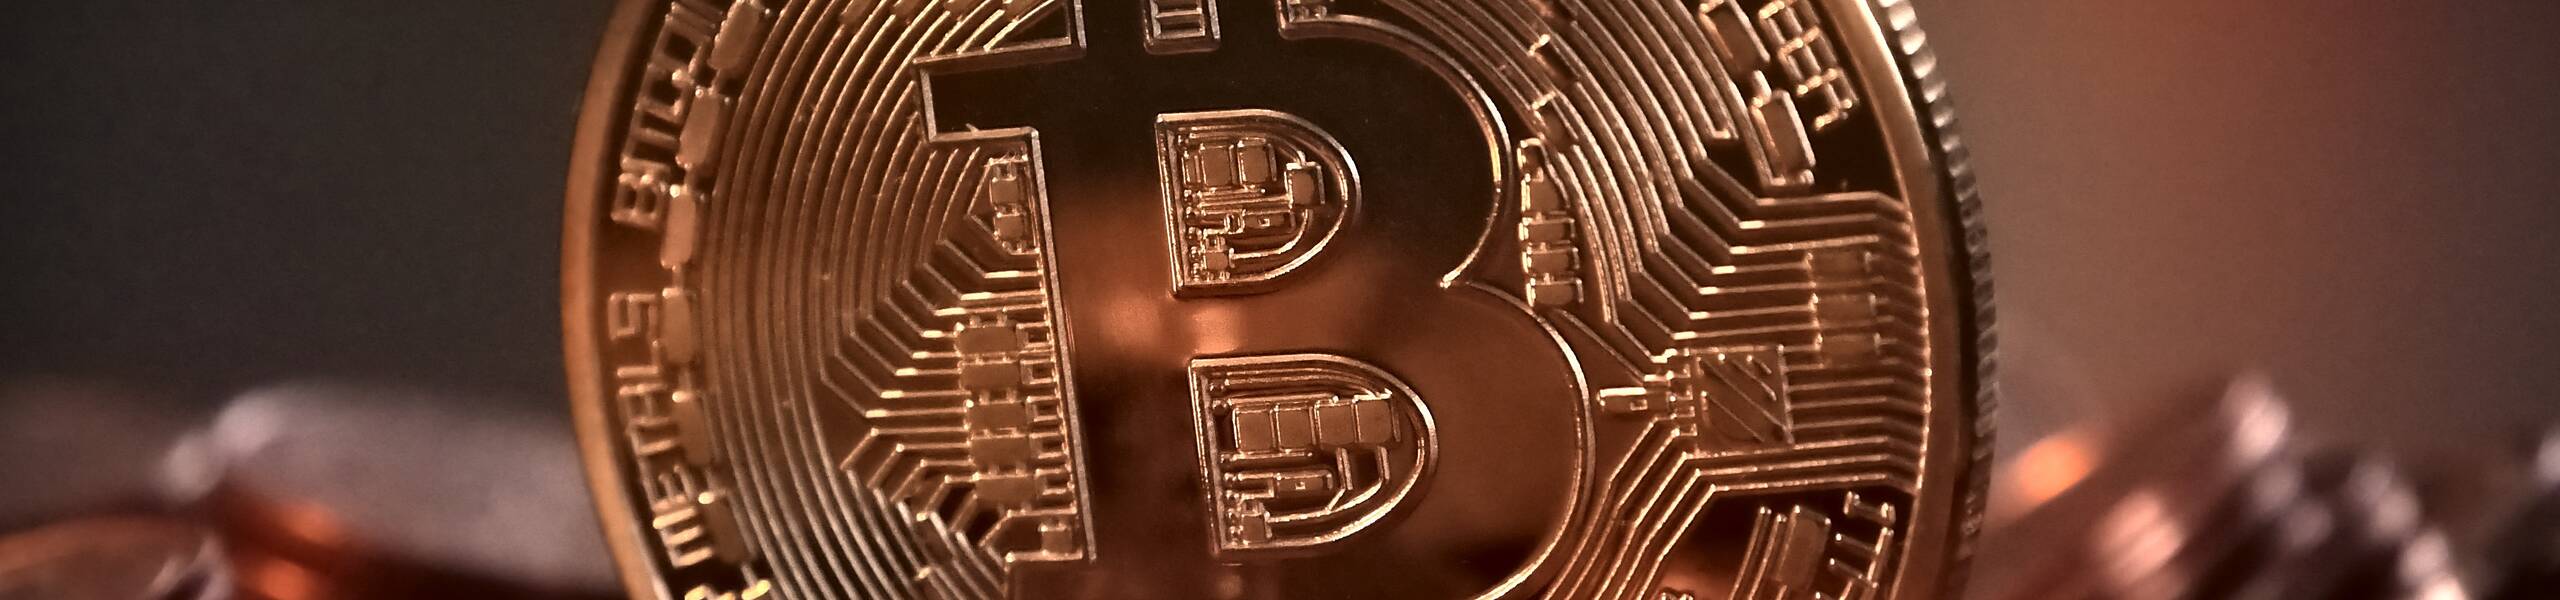 Nuevo impulso en Bitcoin